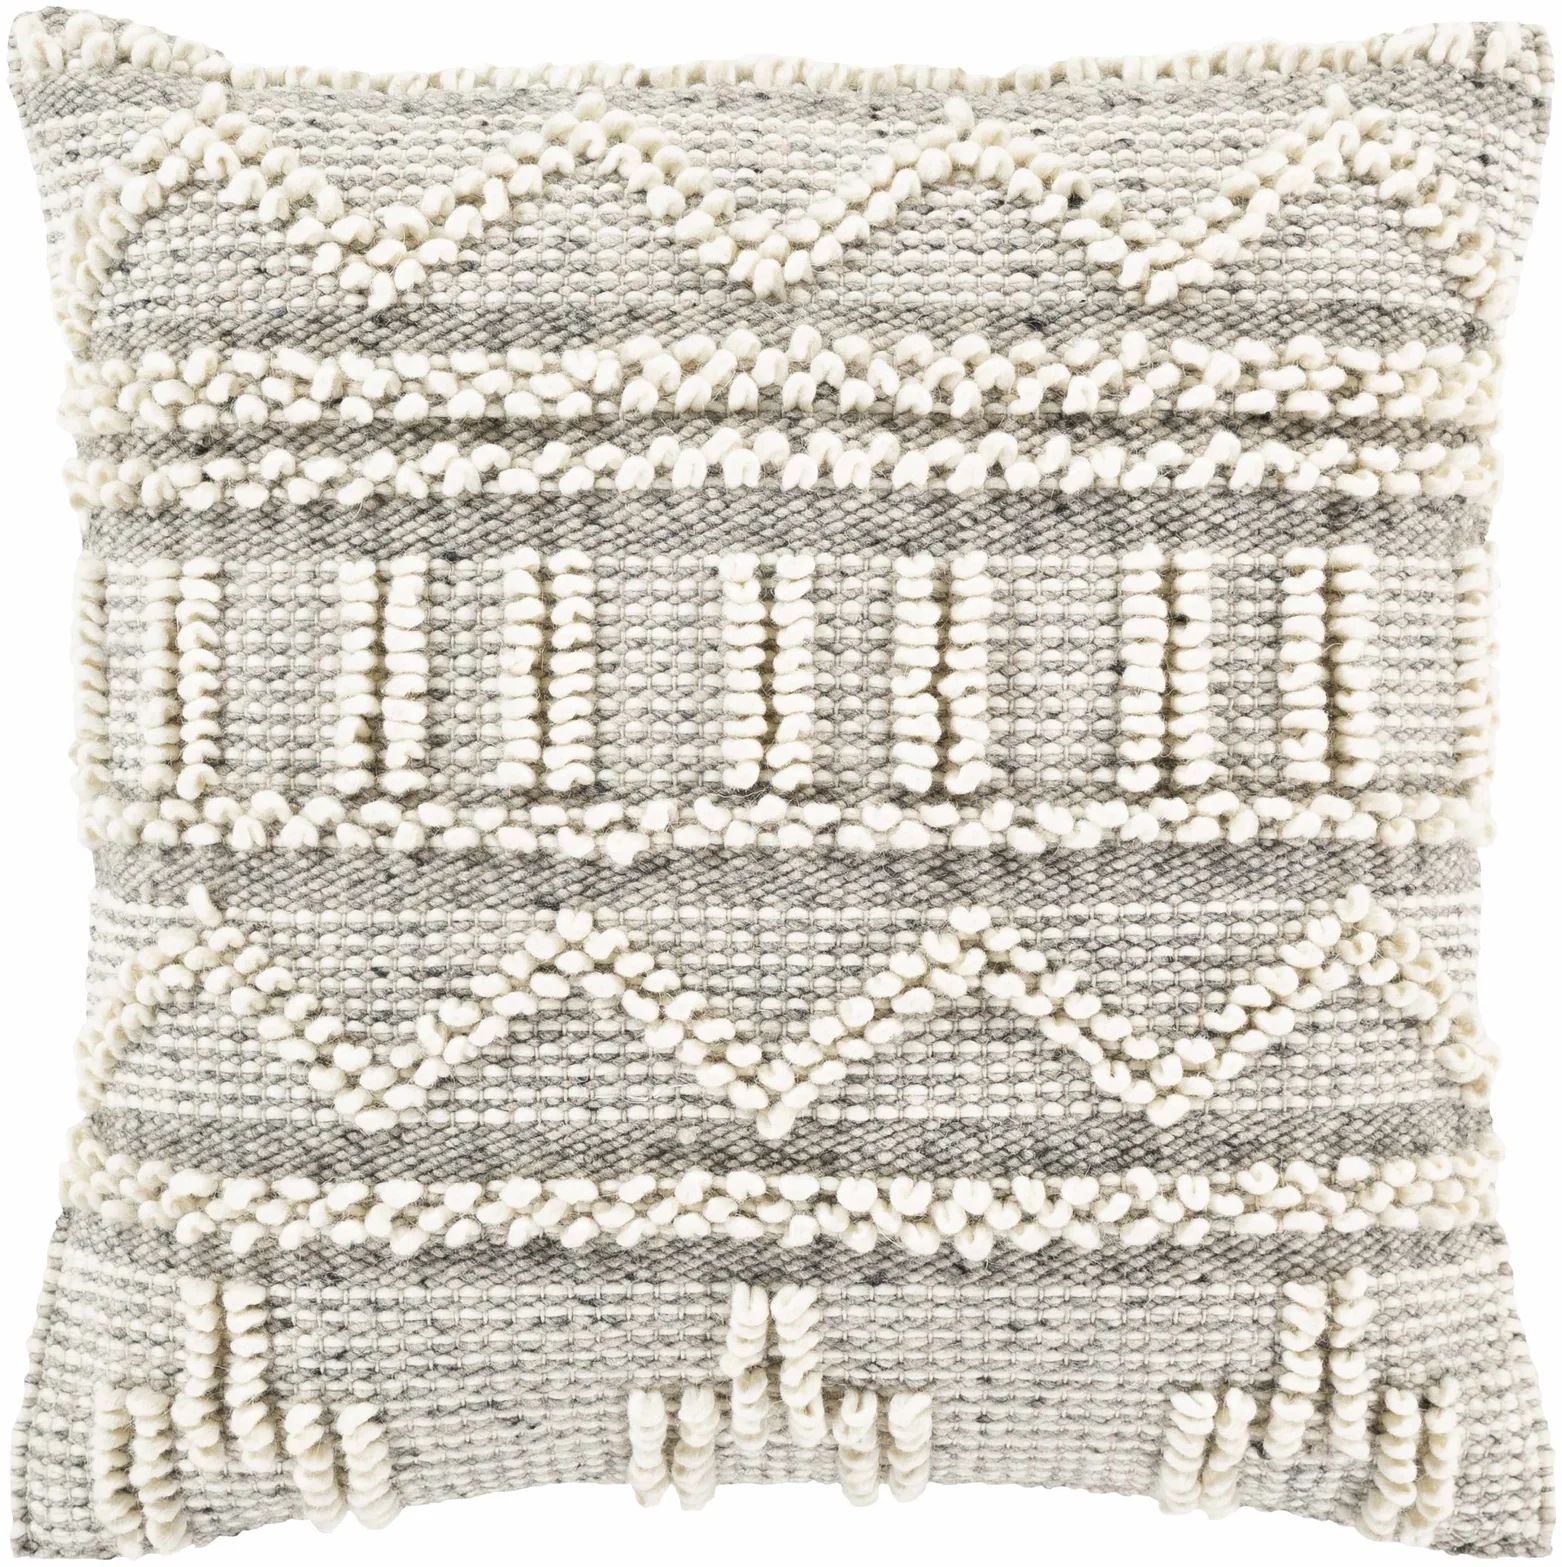 Atascocita Pillow Cover | Boutique Rugs